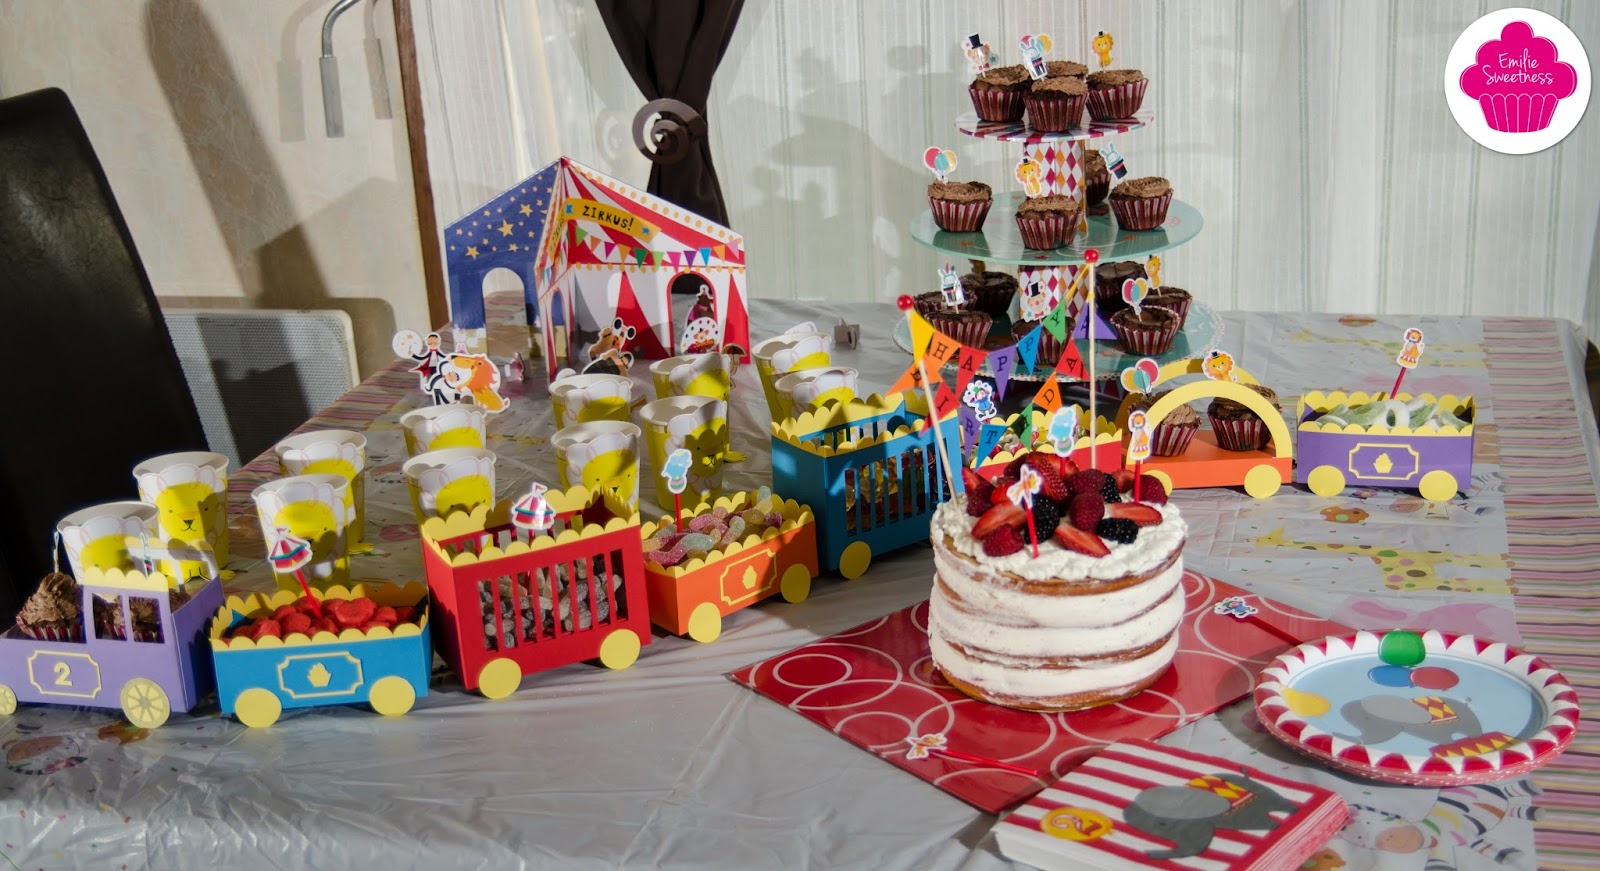 Décorations de gâteau sur le thème du cirque pour 1 an d